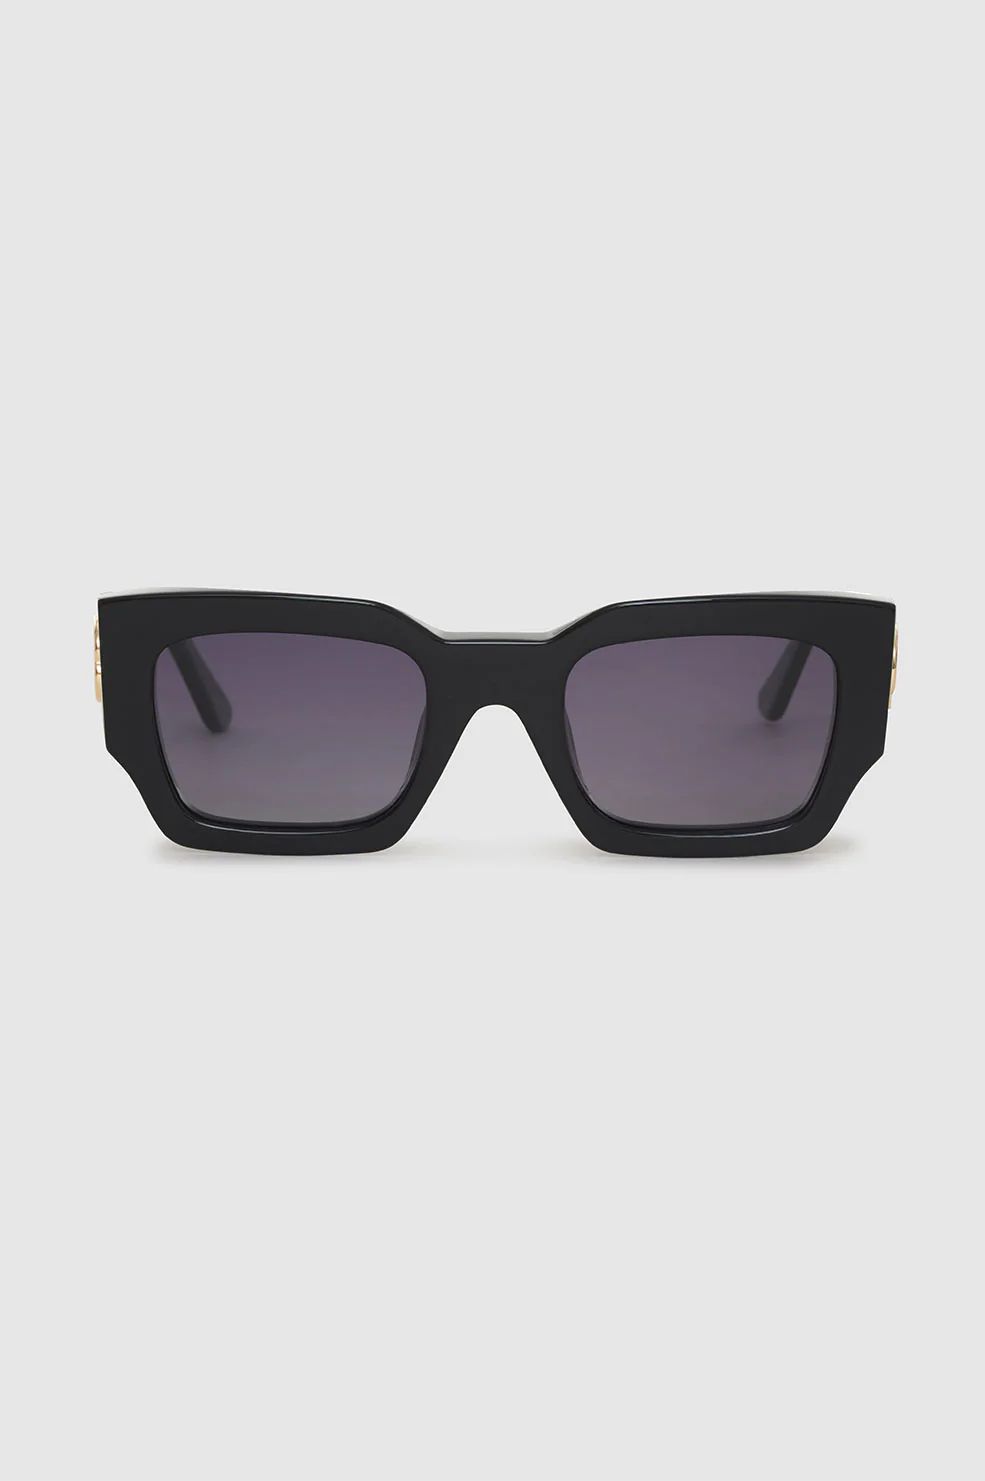 Indio Sunglasses Monogram | Anine Bing